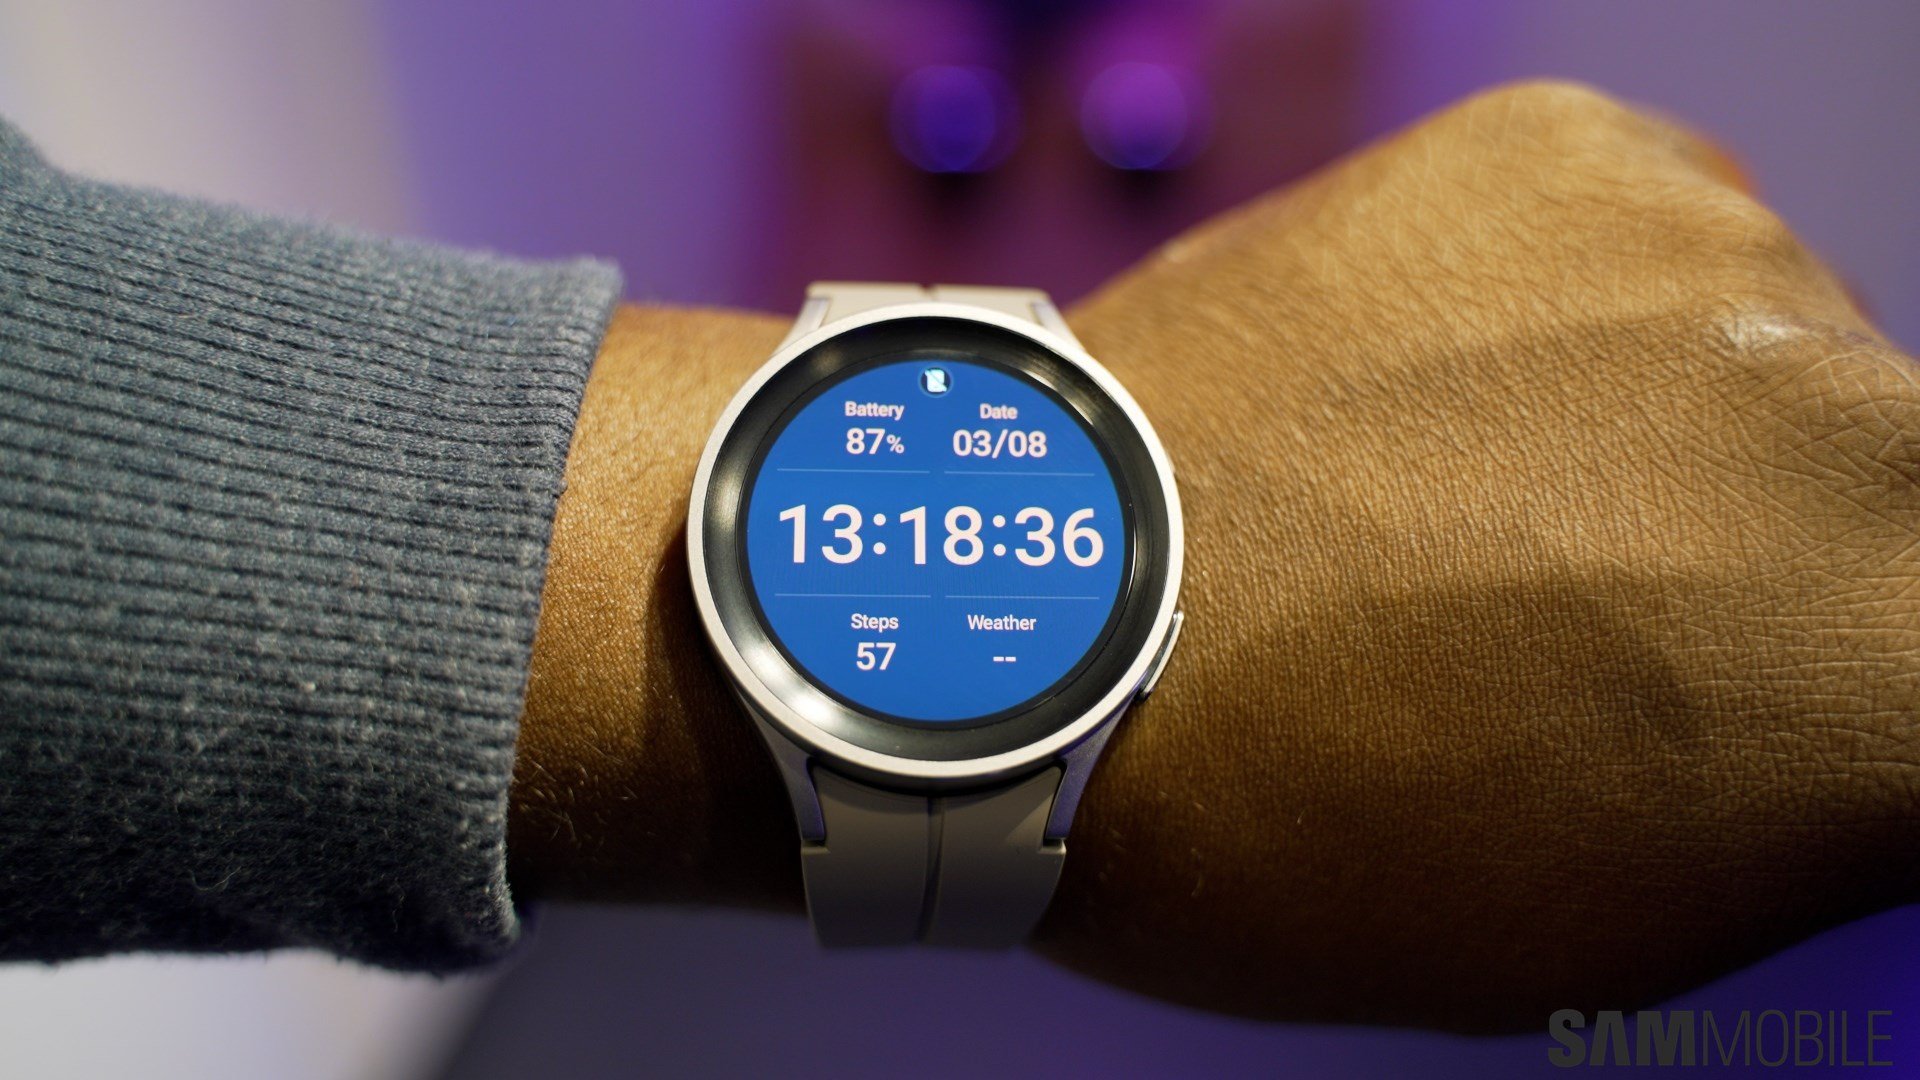 Không thể cài đặt Google Assistant trên Galaxy Watch 5? Đây là cách sửa... Bạn đang gặp vấn đề khi cài đặt Google Assistant trên Galaxy Watch 5? Đừng lo lắng, hãy xem video của chúng tôi để biết các bước đơn giản để sửa lỗi này. Bạn sẽ dễ dàng thao tác và sử dụng thiết bị một cách hiệu quả hơn.